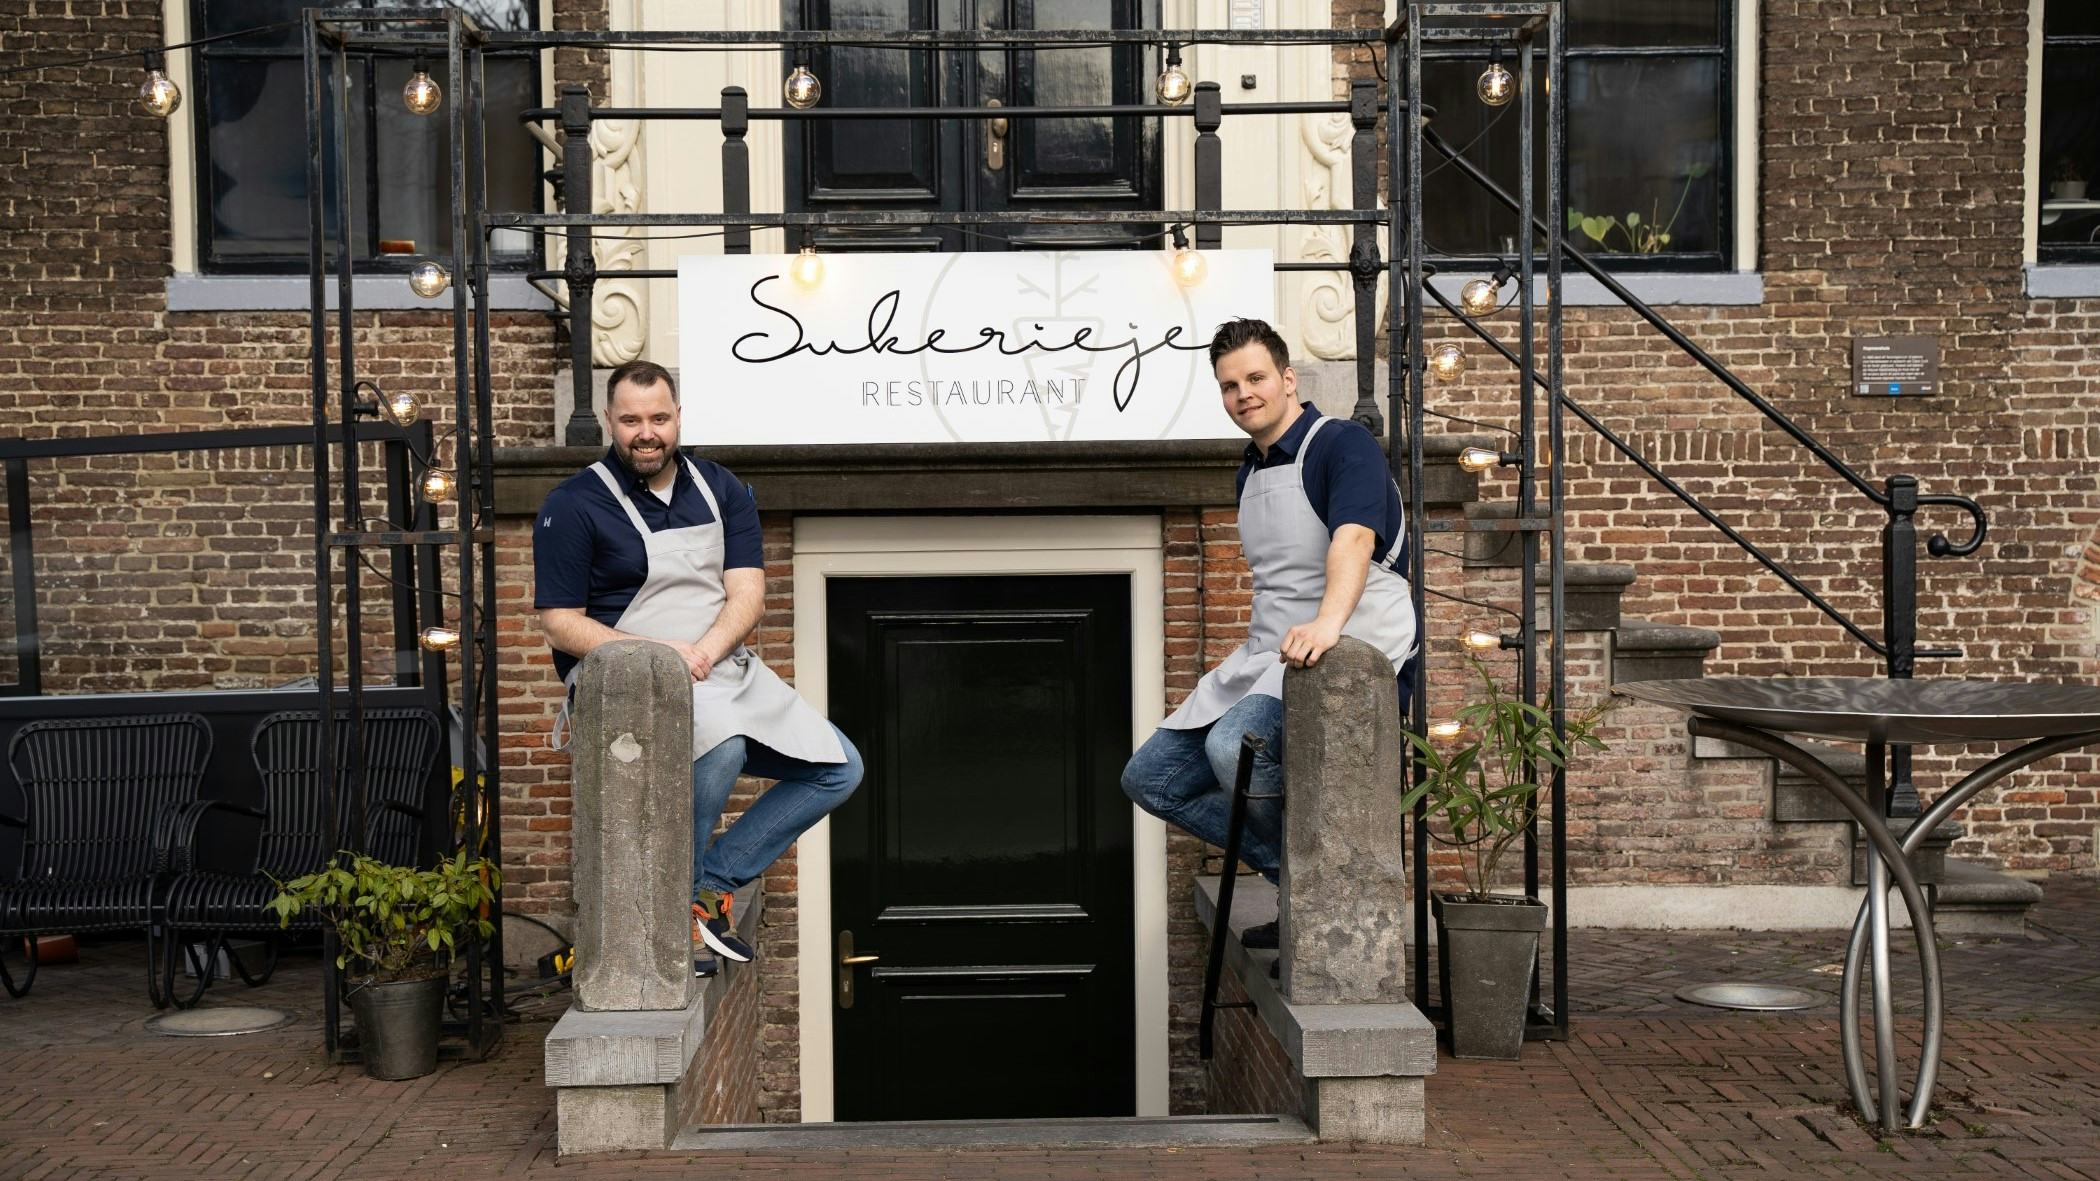 Restaurant Sukerieje opent de deuren in Zwolle